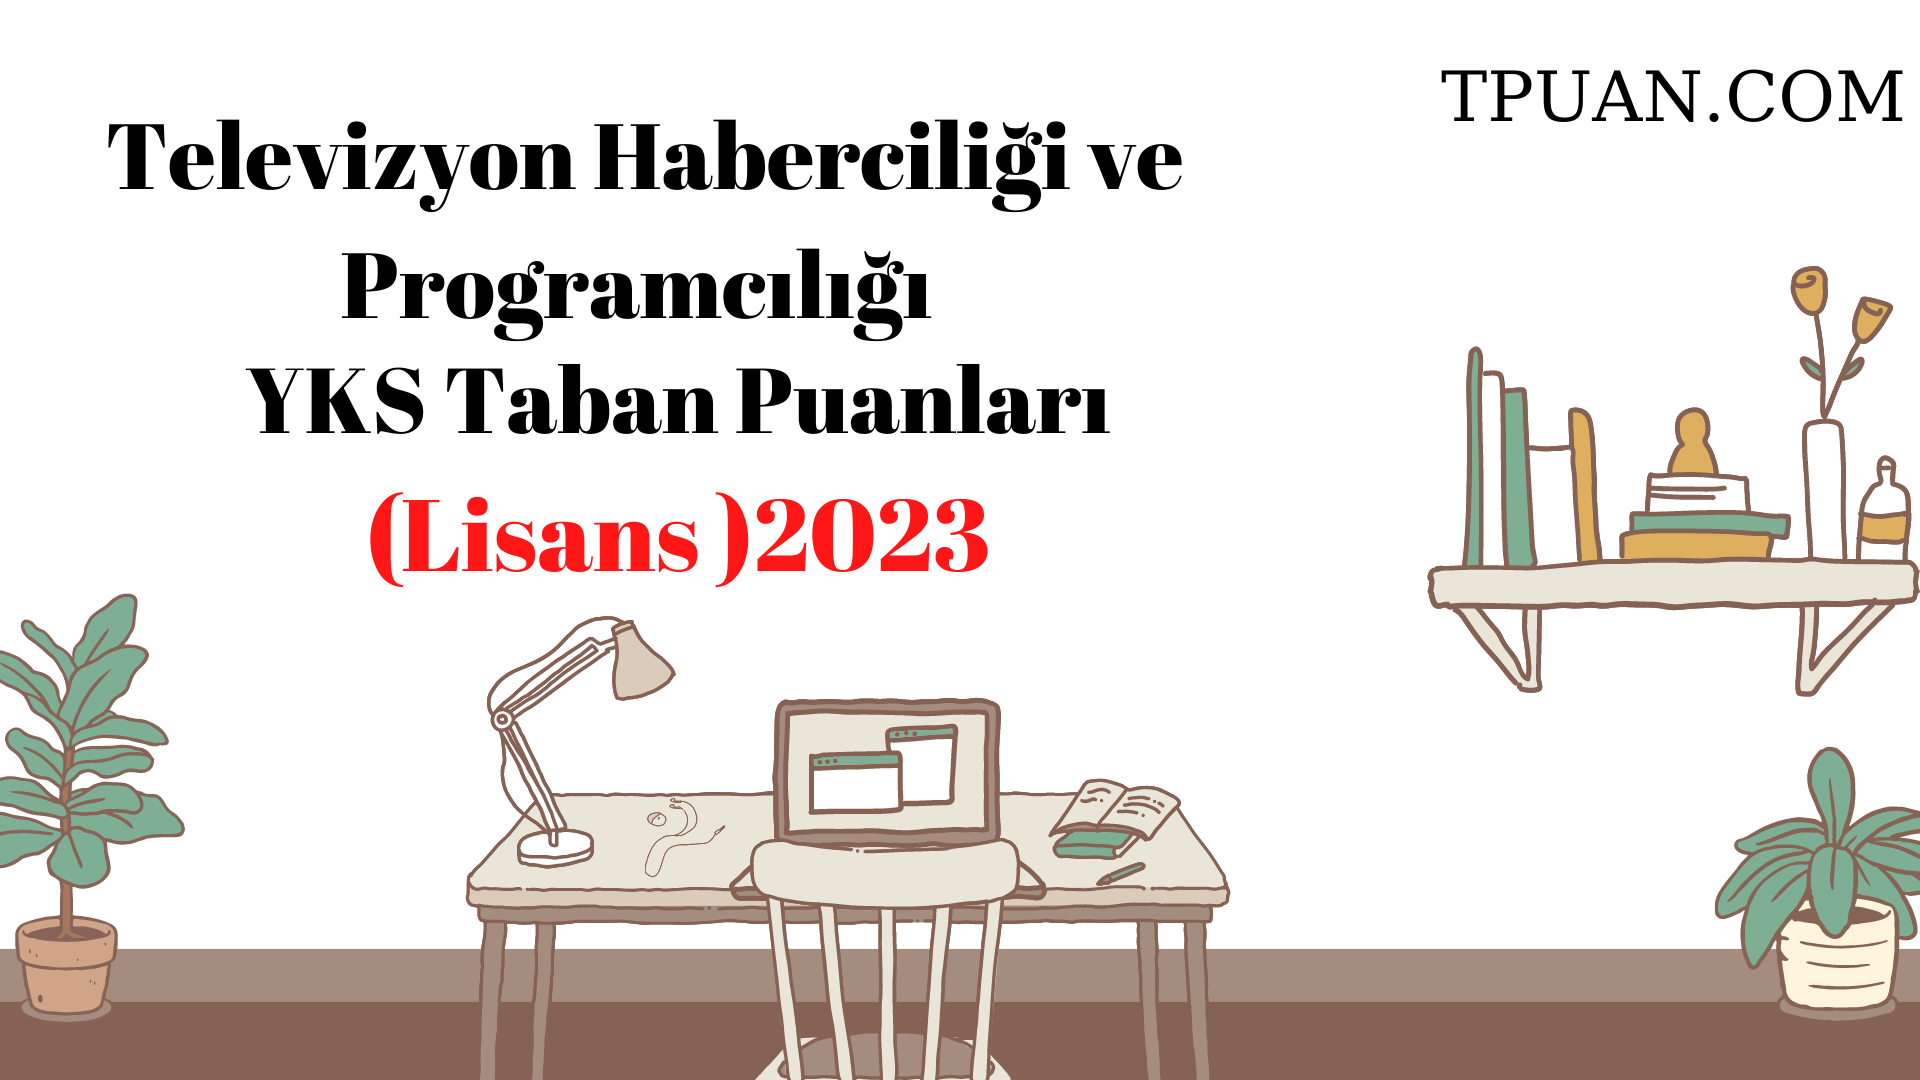  Televizyon Haberciliği ve Programcılığı Bölümü YKS Taban Puanları (4 Yıllık) 2023